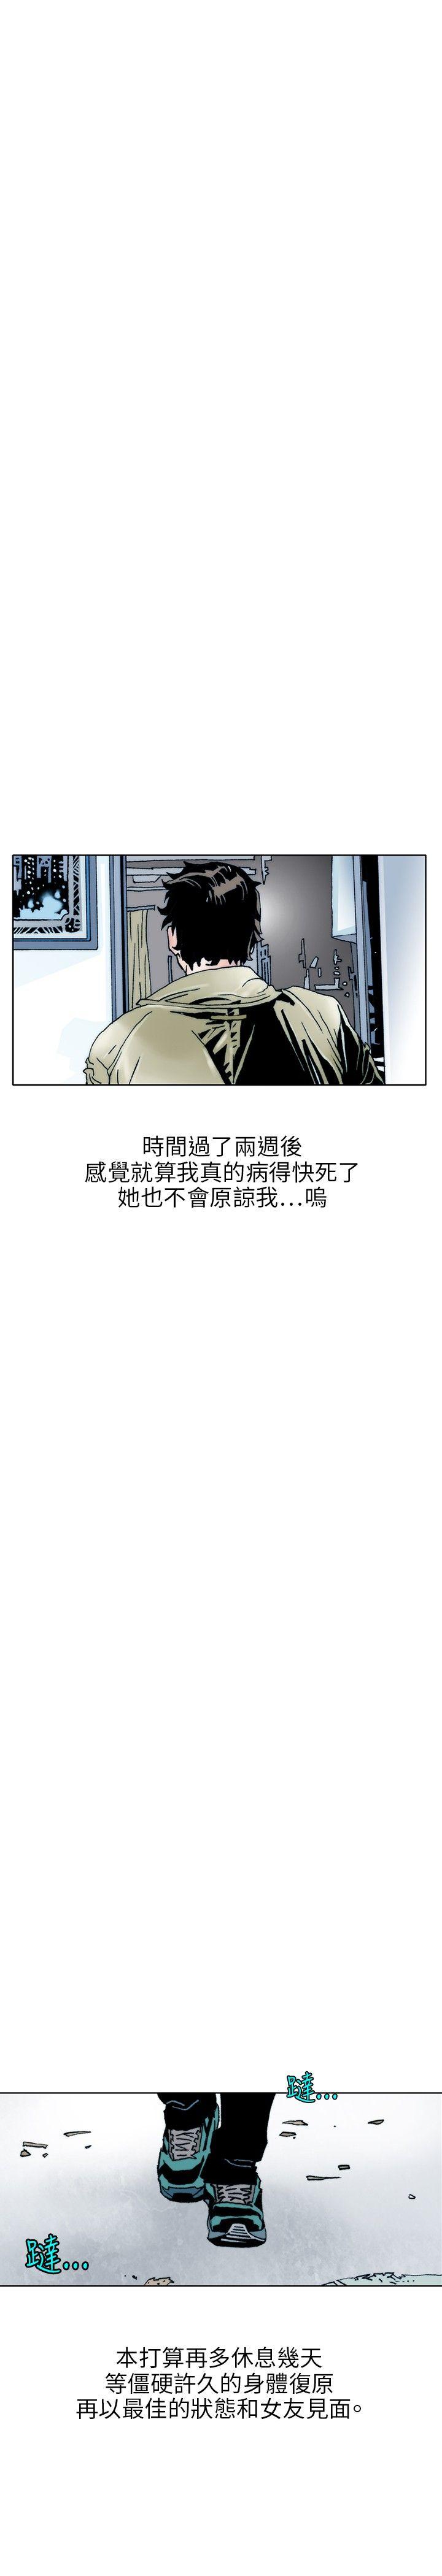 秘密Story  性爱奴隶(2) 漫画图片8.jpg